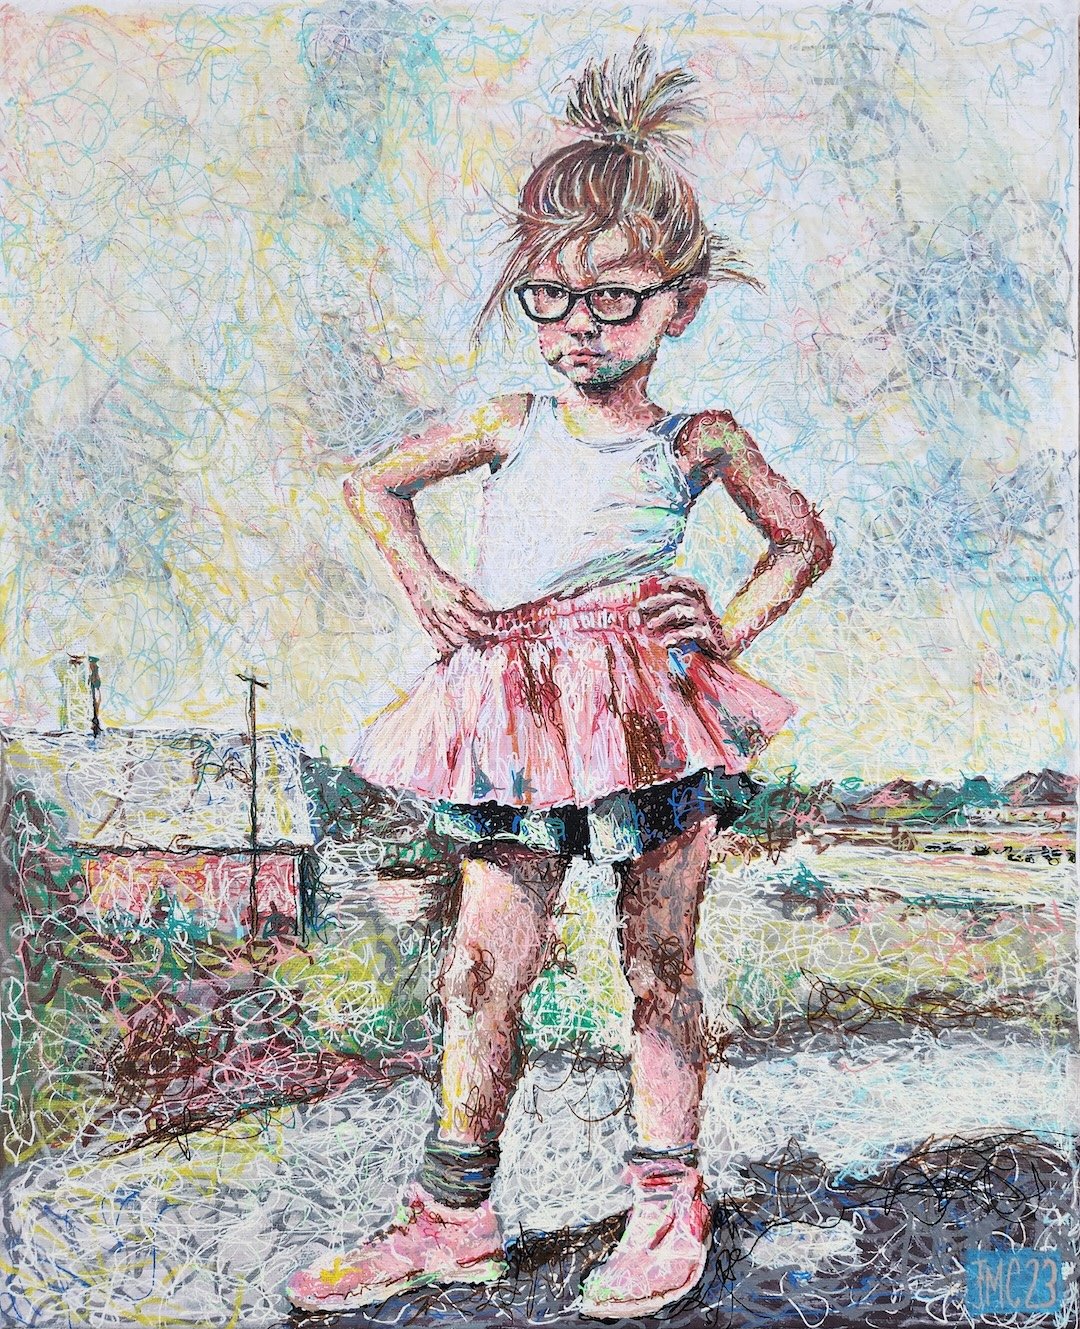    Rebel Girl  , 20” x 16”, acrylic on canvas 